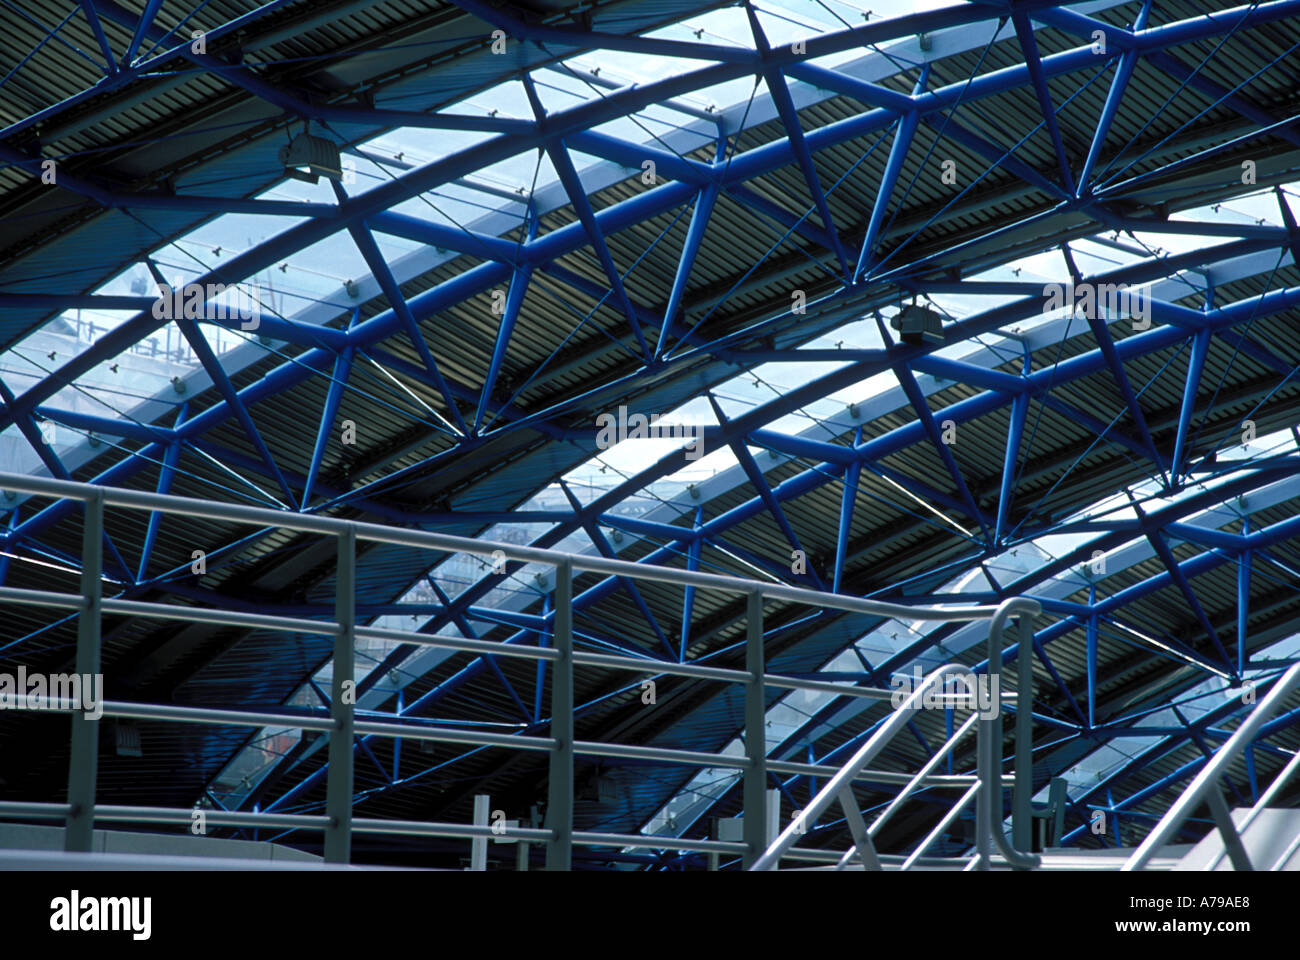 La structure du toit de la Gare Internationale de Waterloo, Londres, Angleterre Banque D'Images